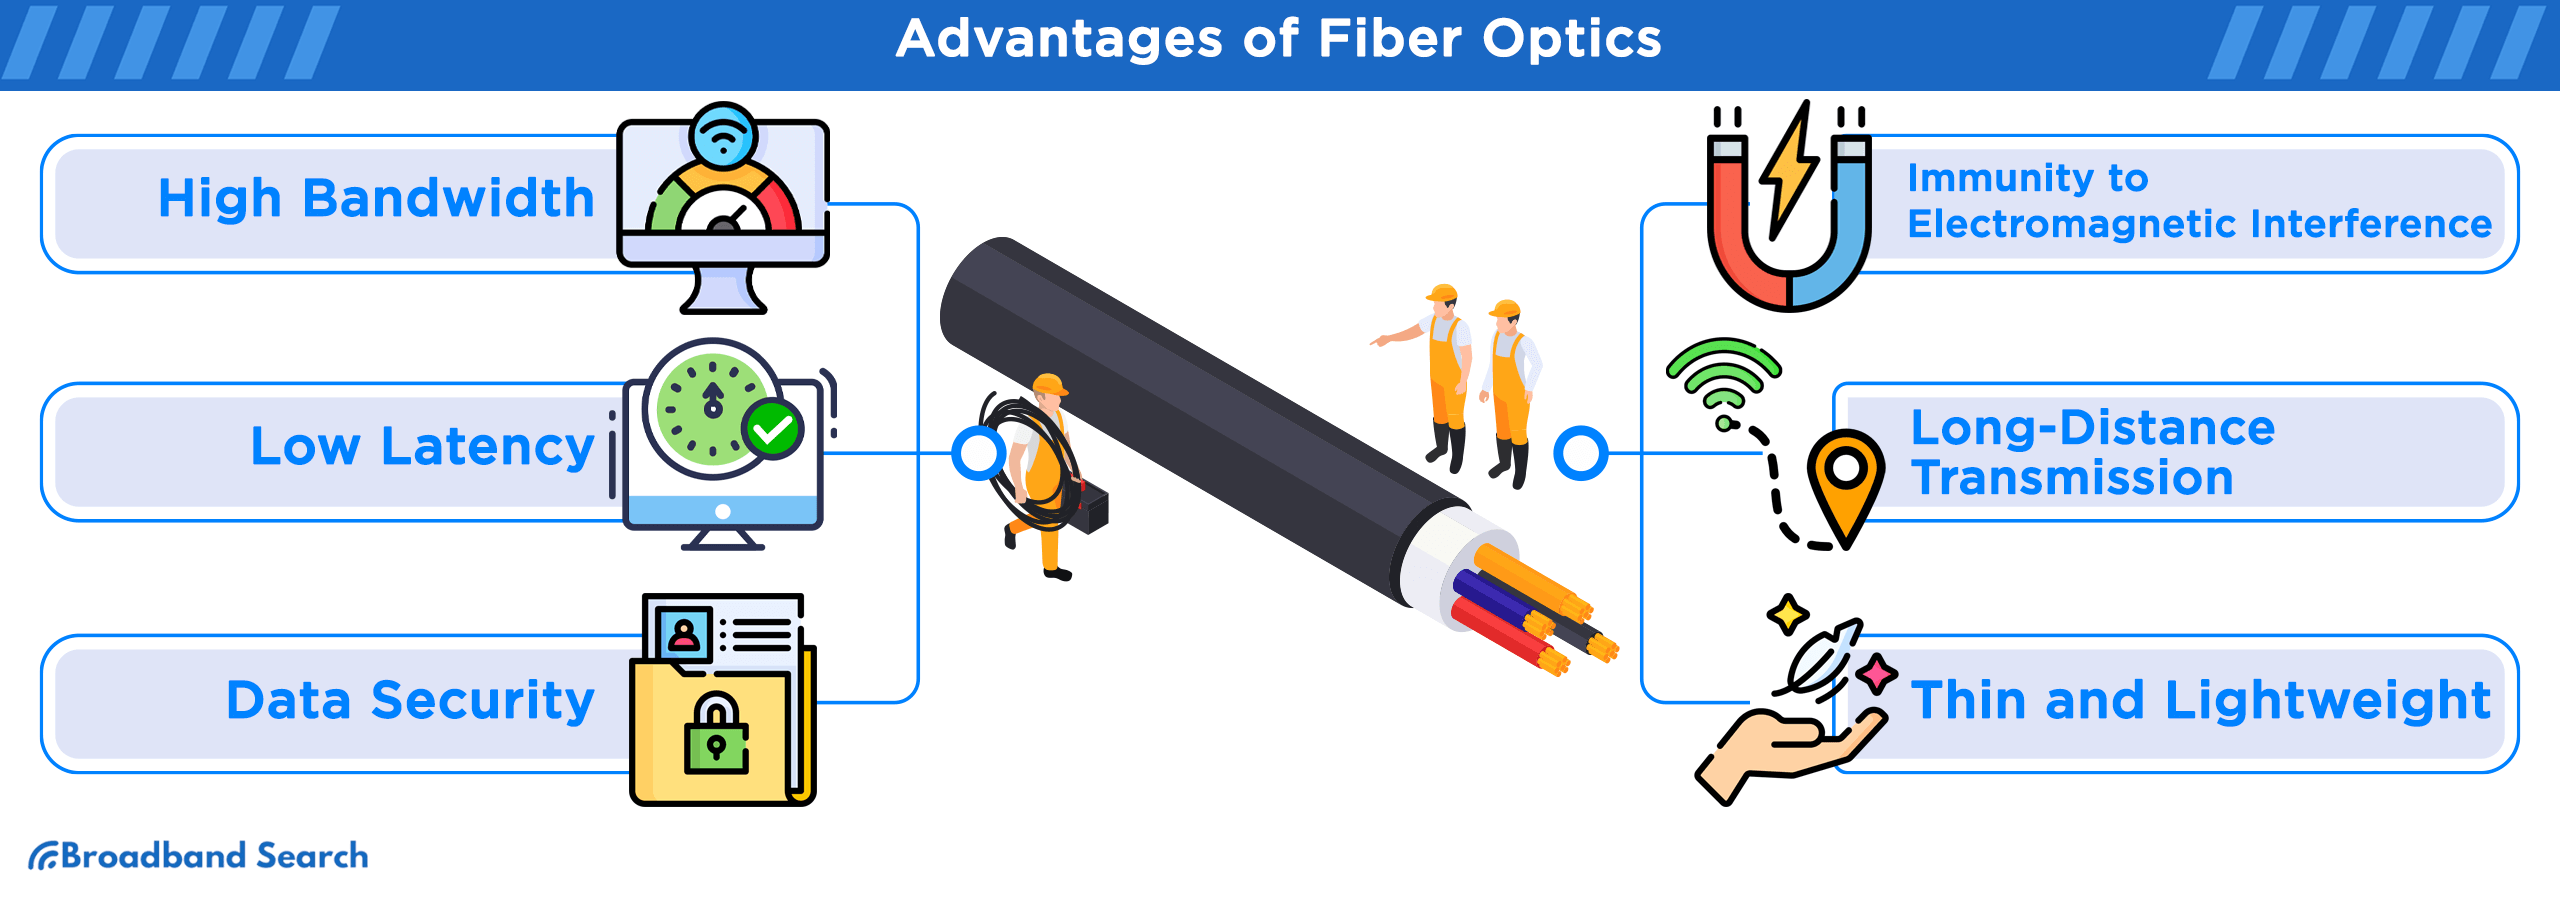 Six advantages of fiber optics